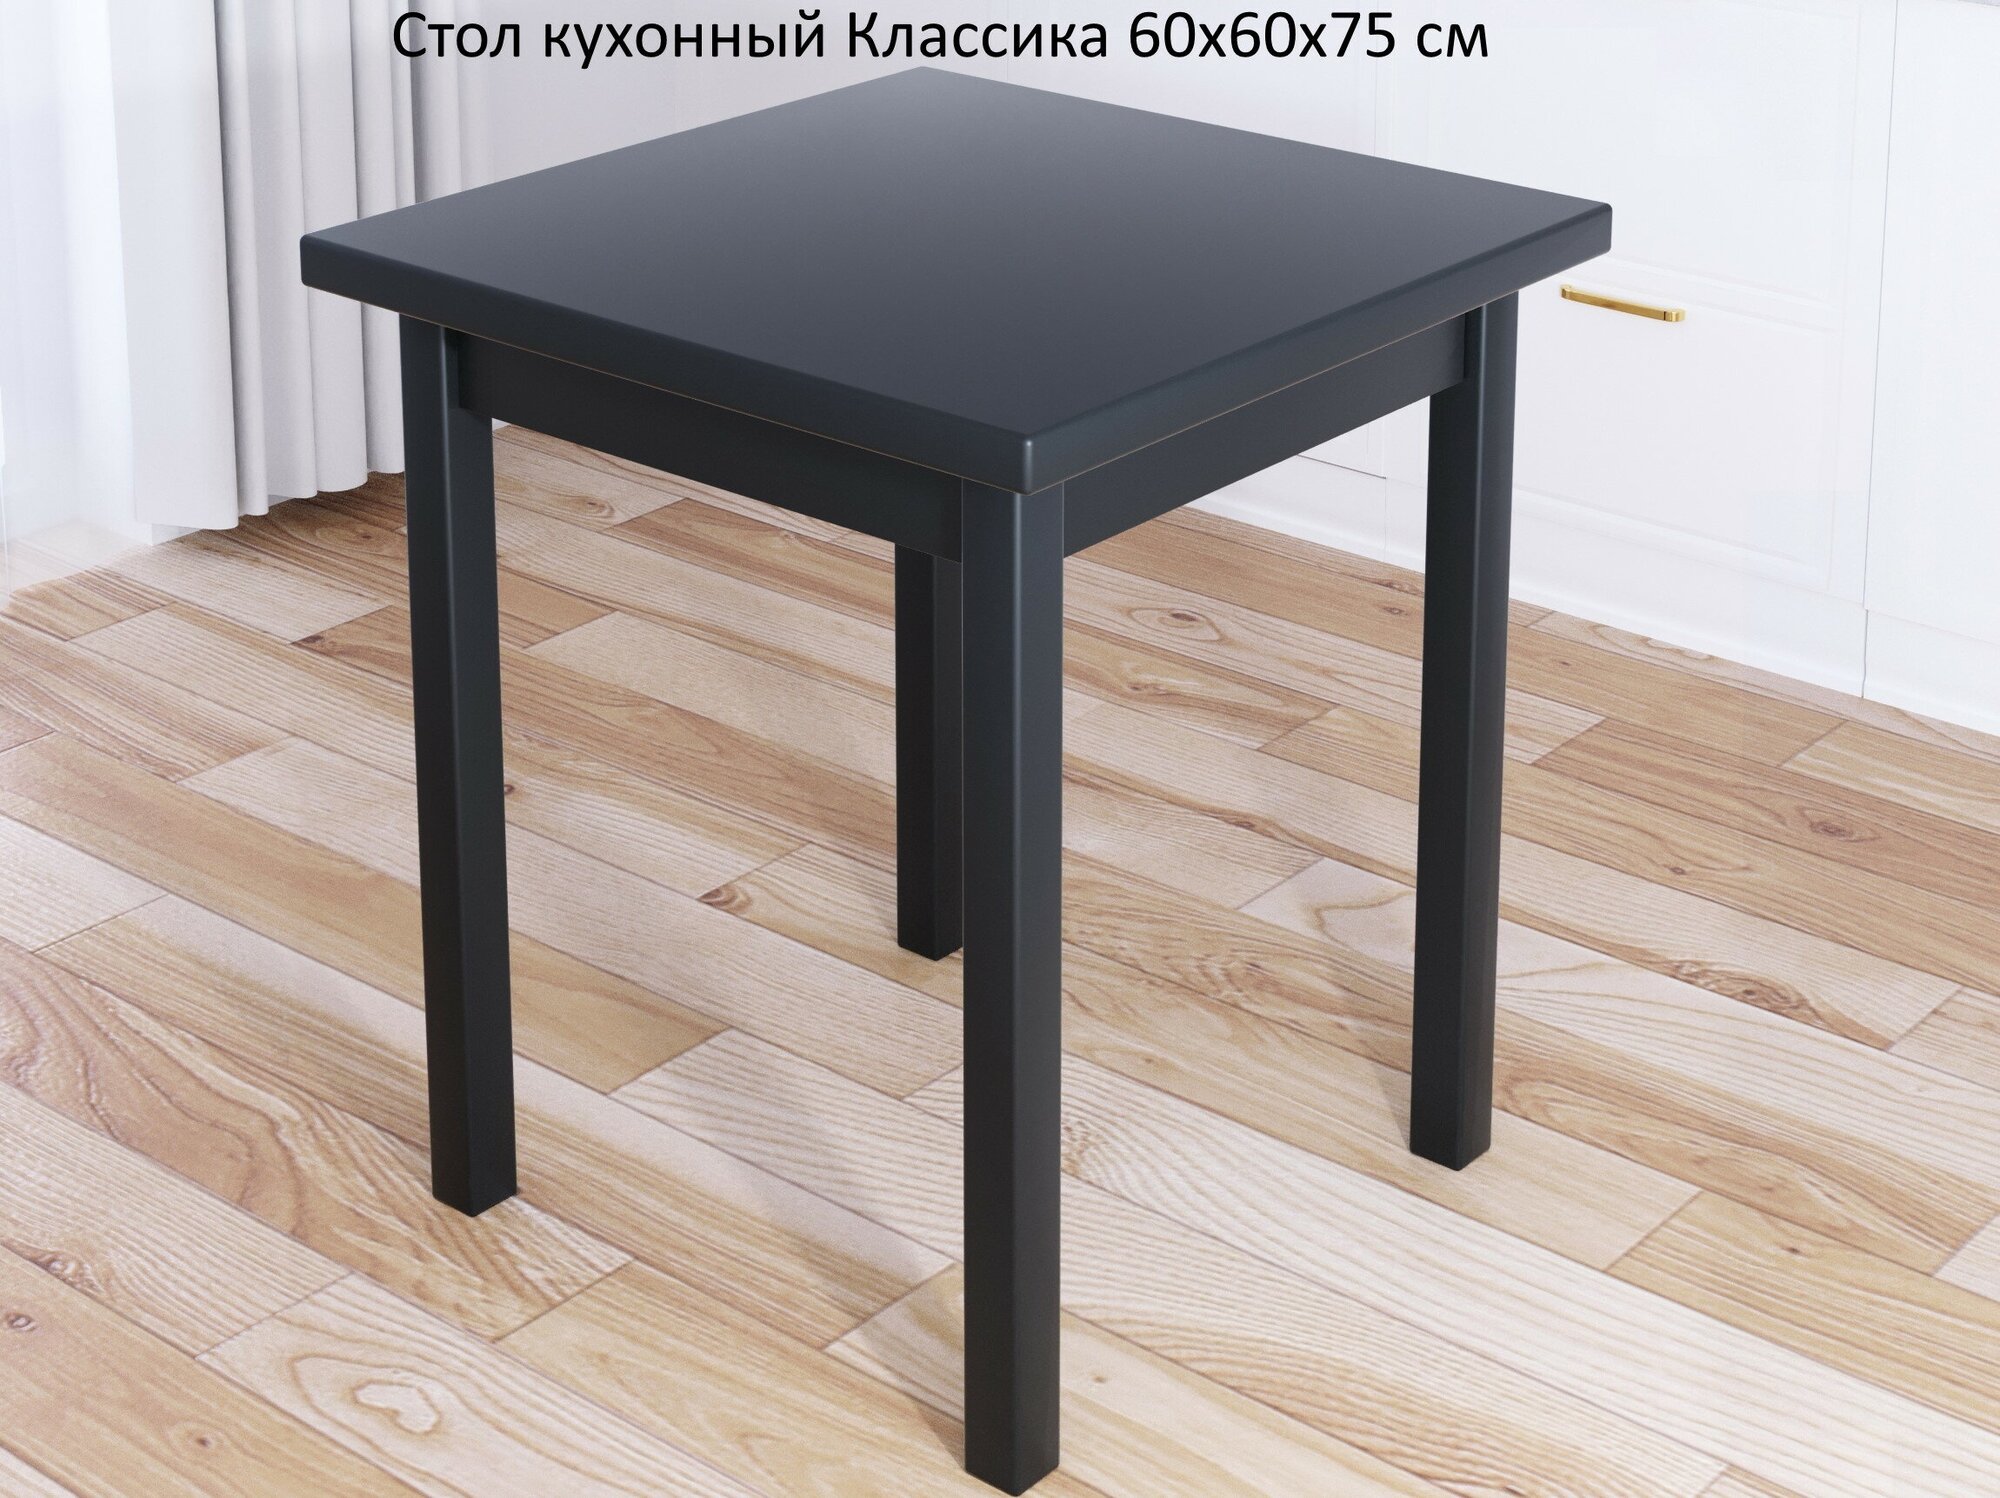 Стол кухонный Классика из массива сосны квадратный, столешница 40 мм, 60х60х75 см, цвет антрацит